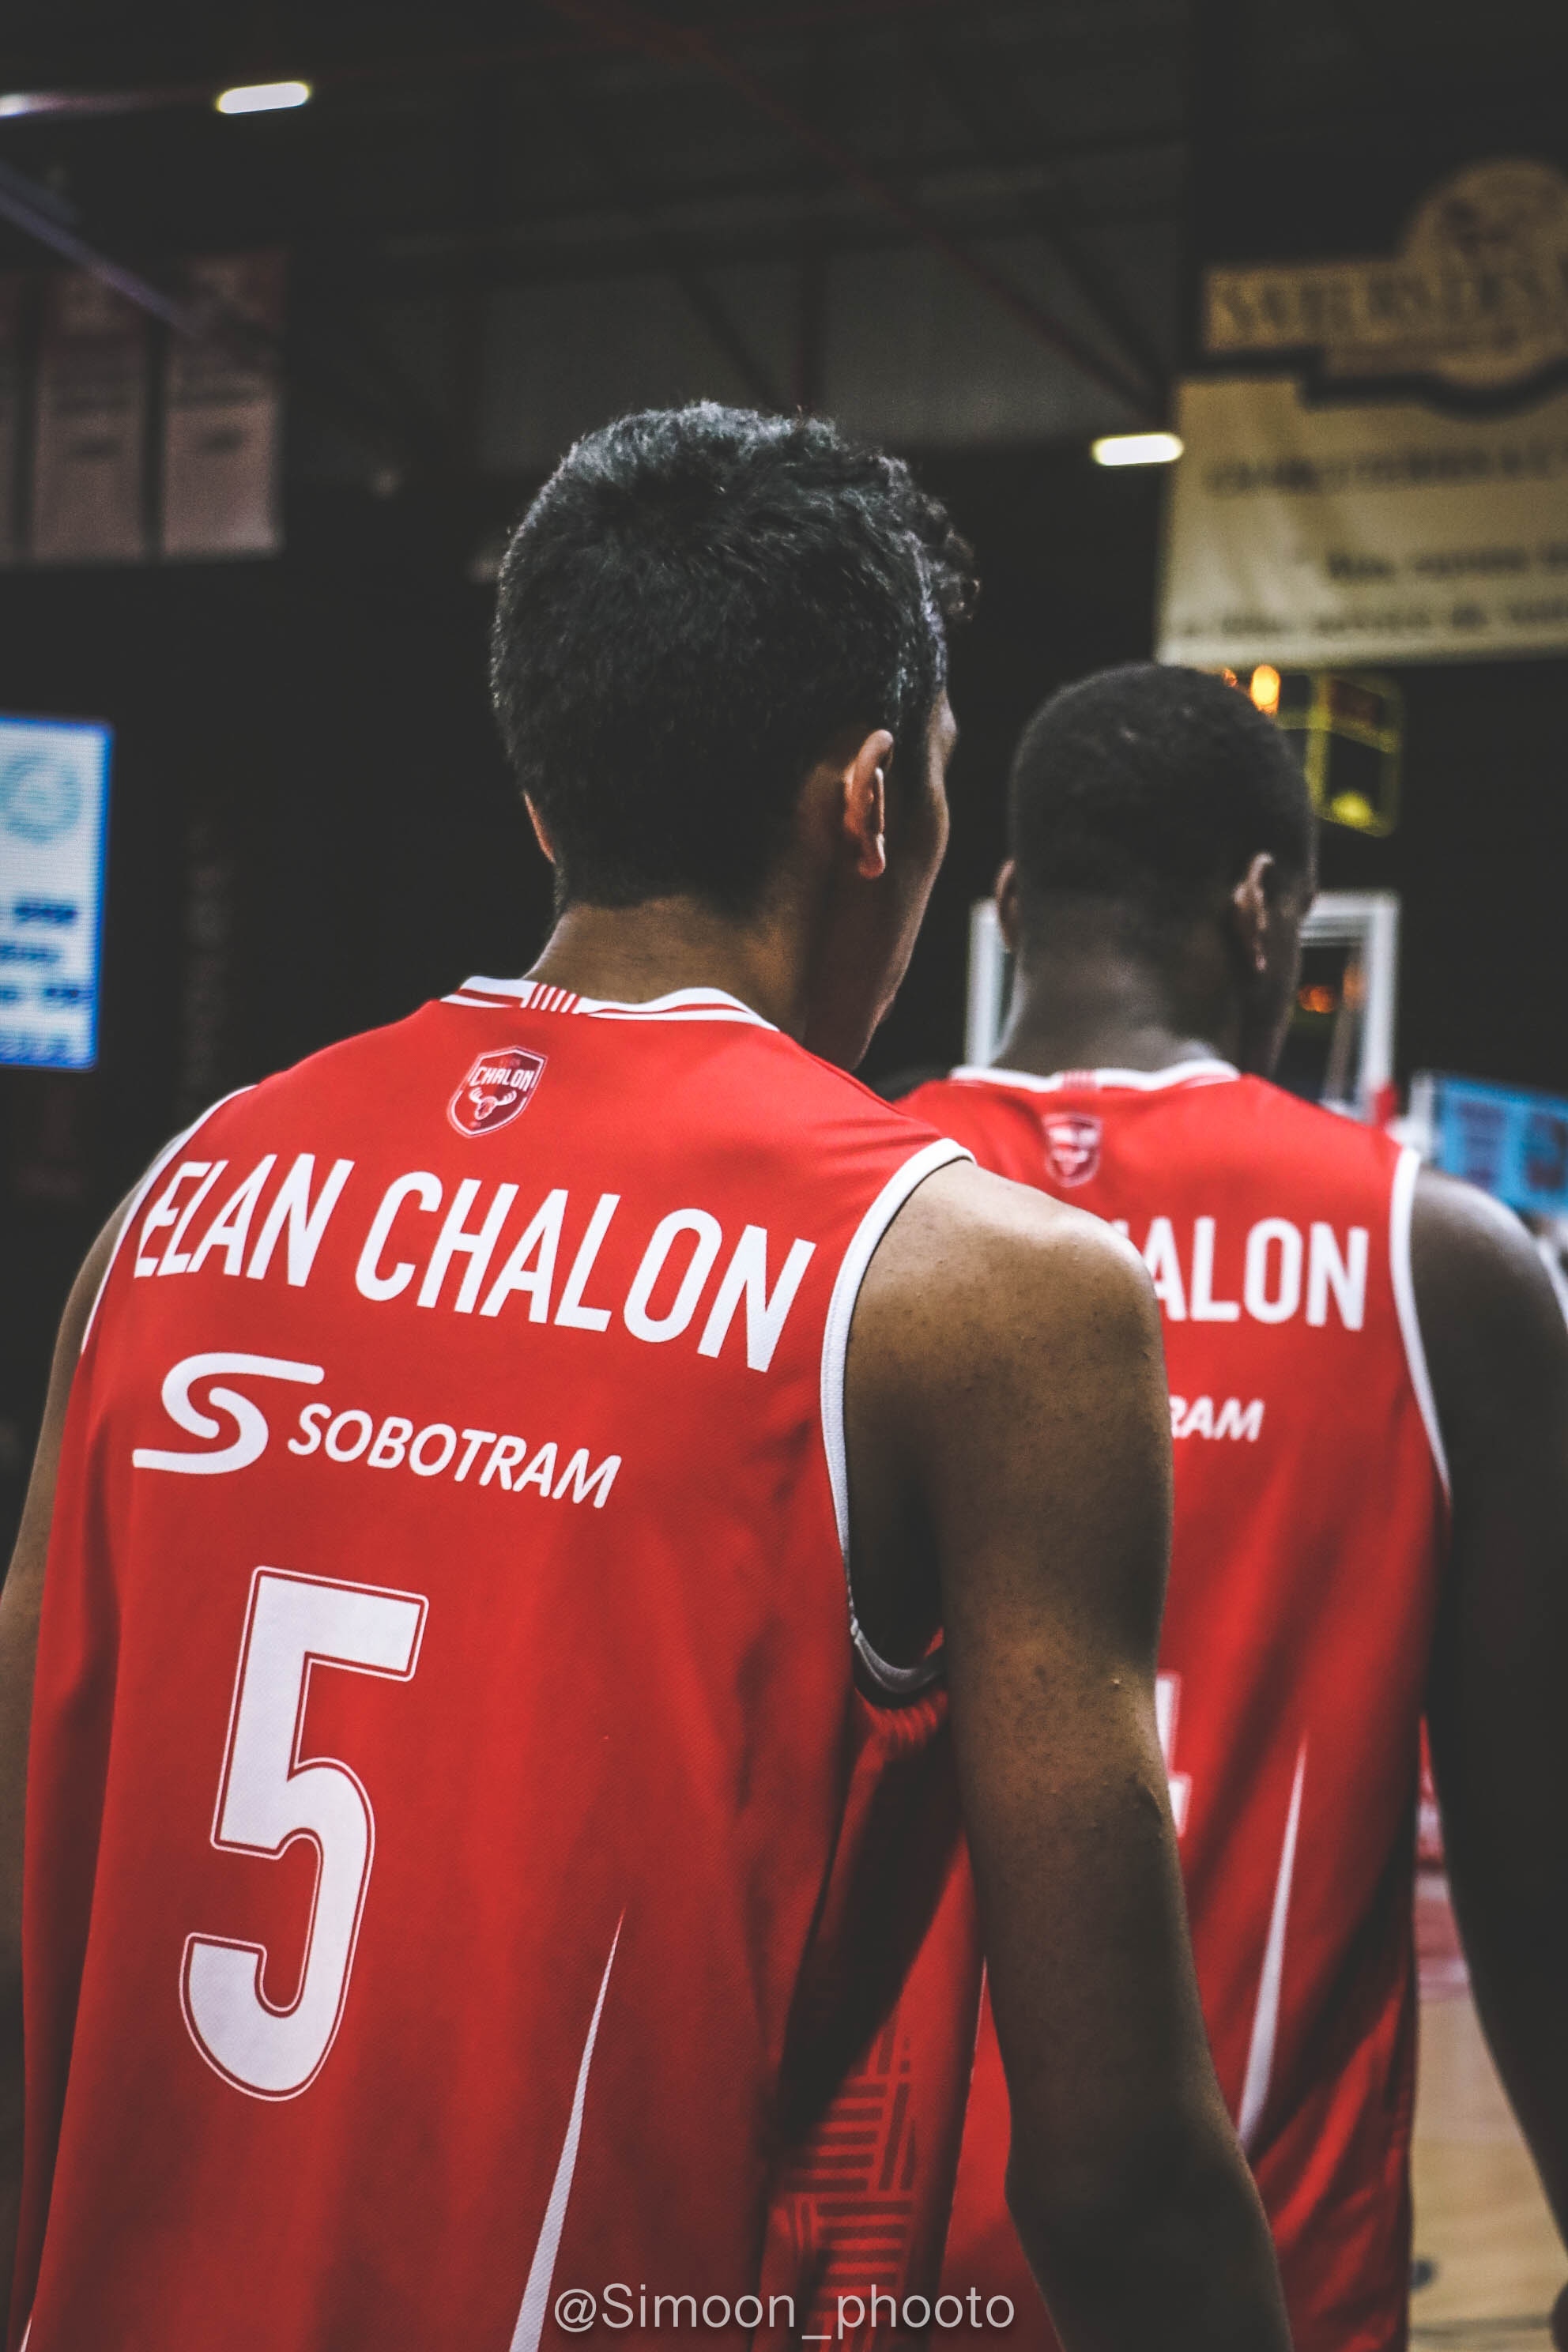 Équipe Chalon vs Cholet Basket 19-20